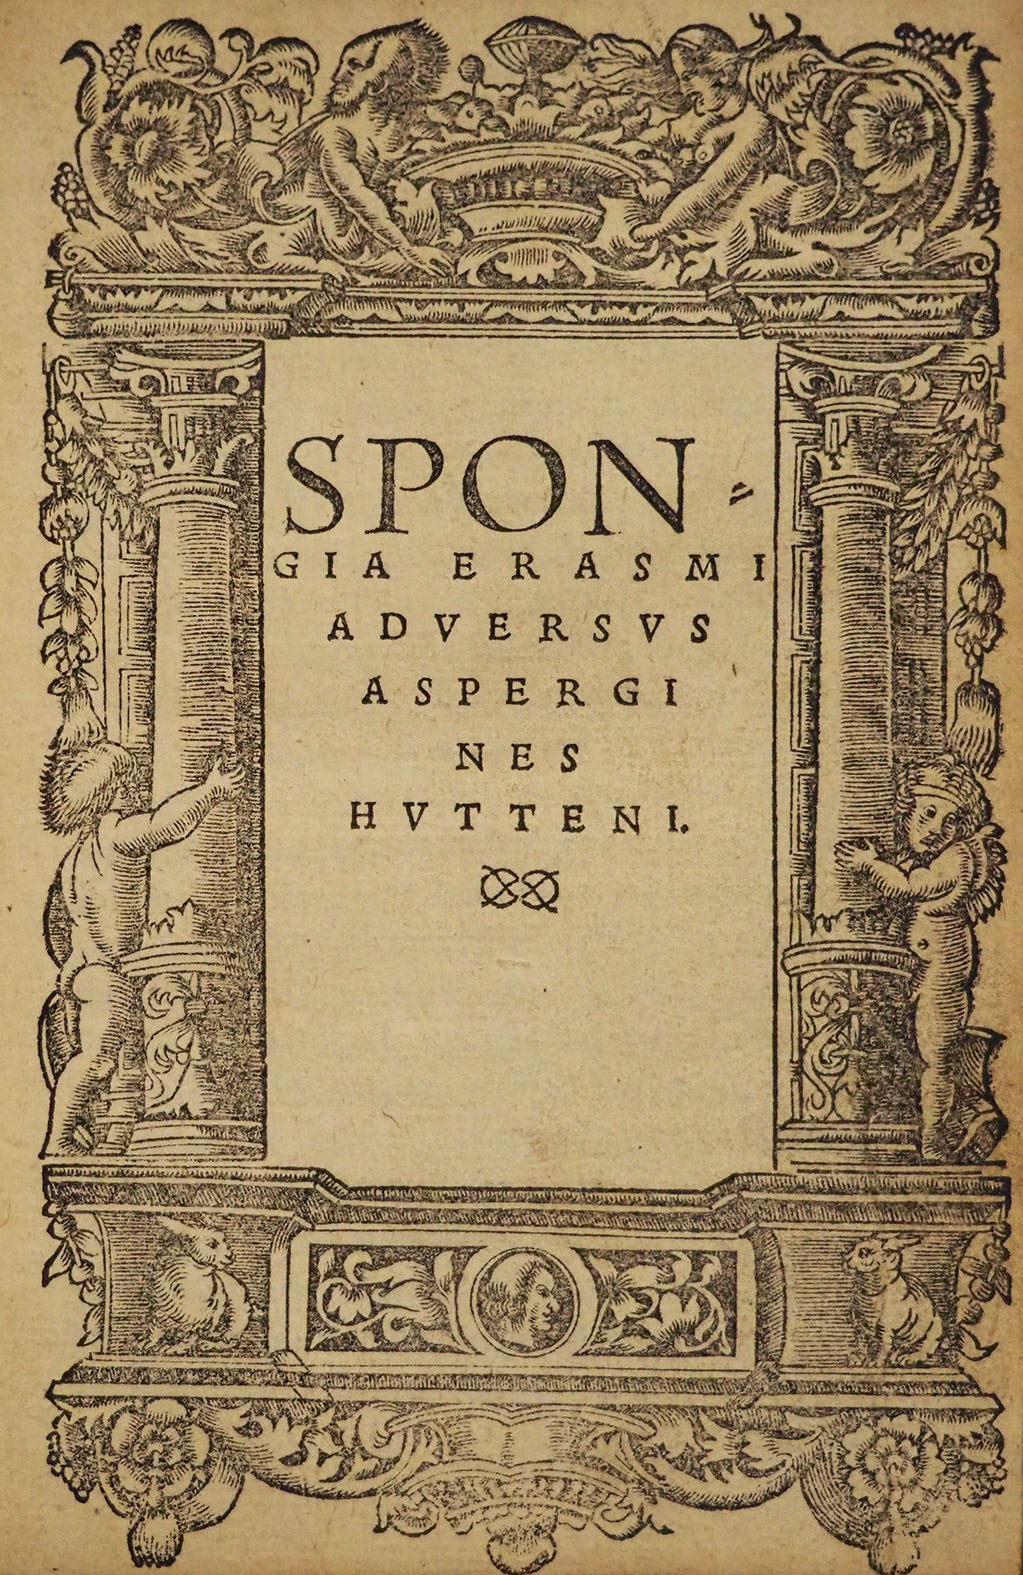 Desiderius Erasmus, Spongia Erasmi adversus aspergines hutteni, Cologne ?, Hero Fuchs ?, 1523, in-8°.